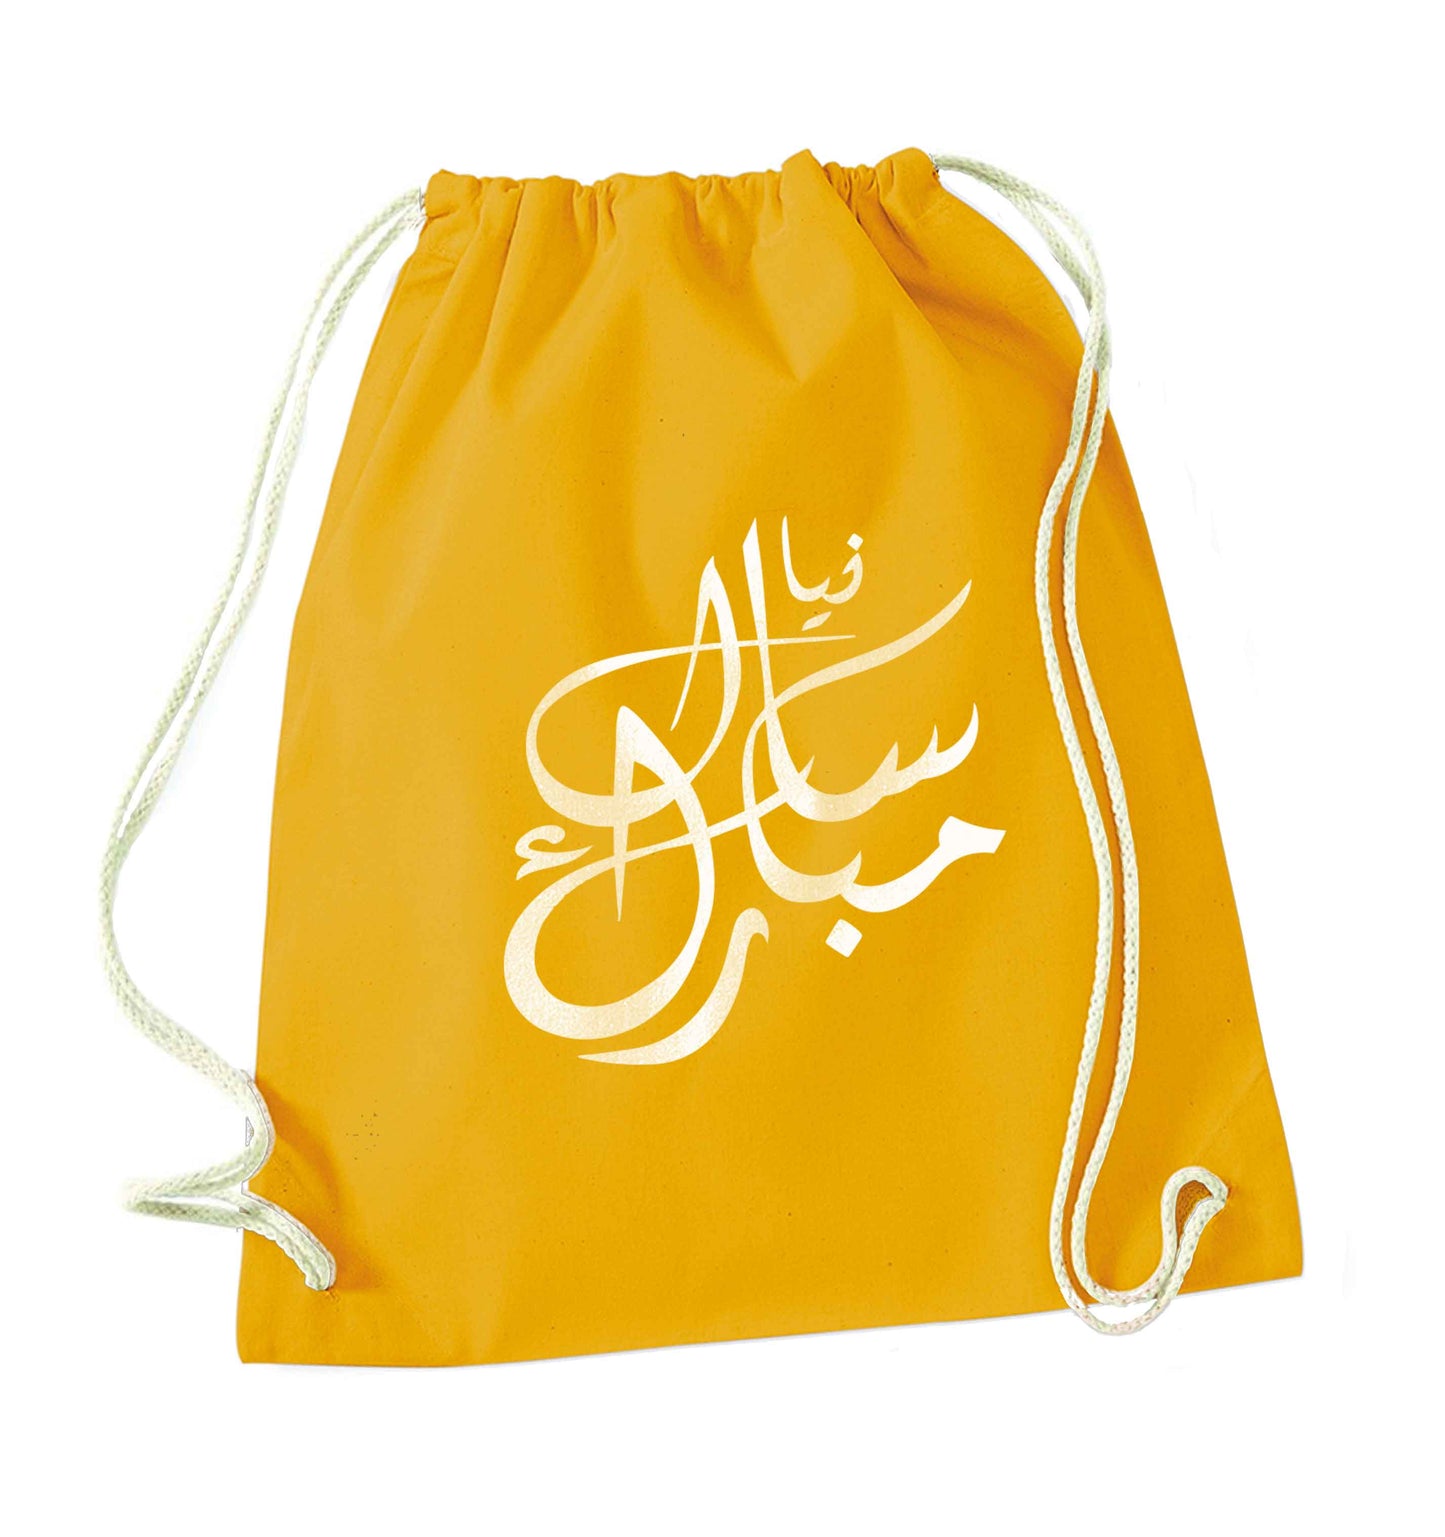 Urdu Naya saal mubarak mustard drawstring bag